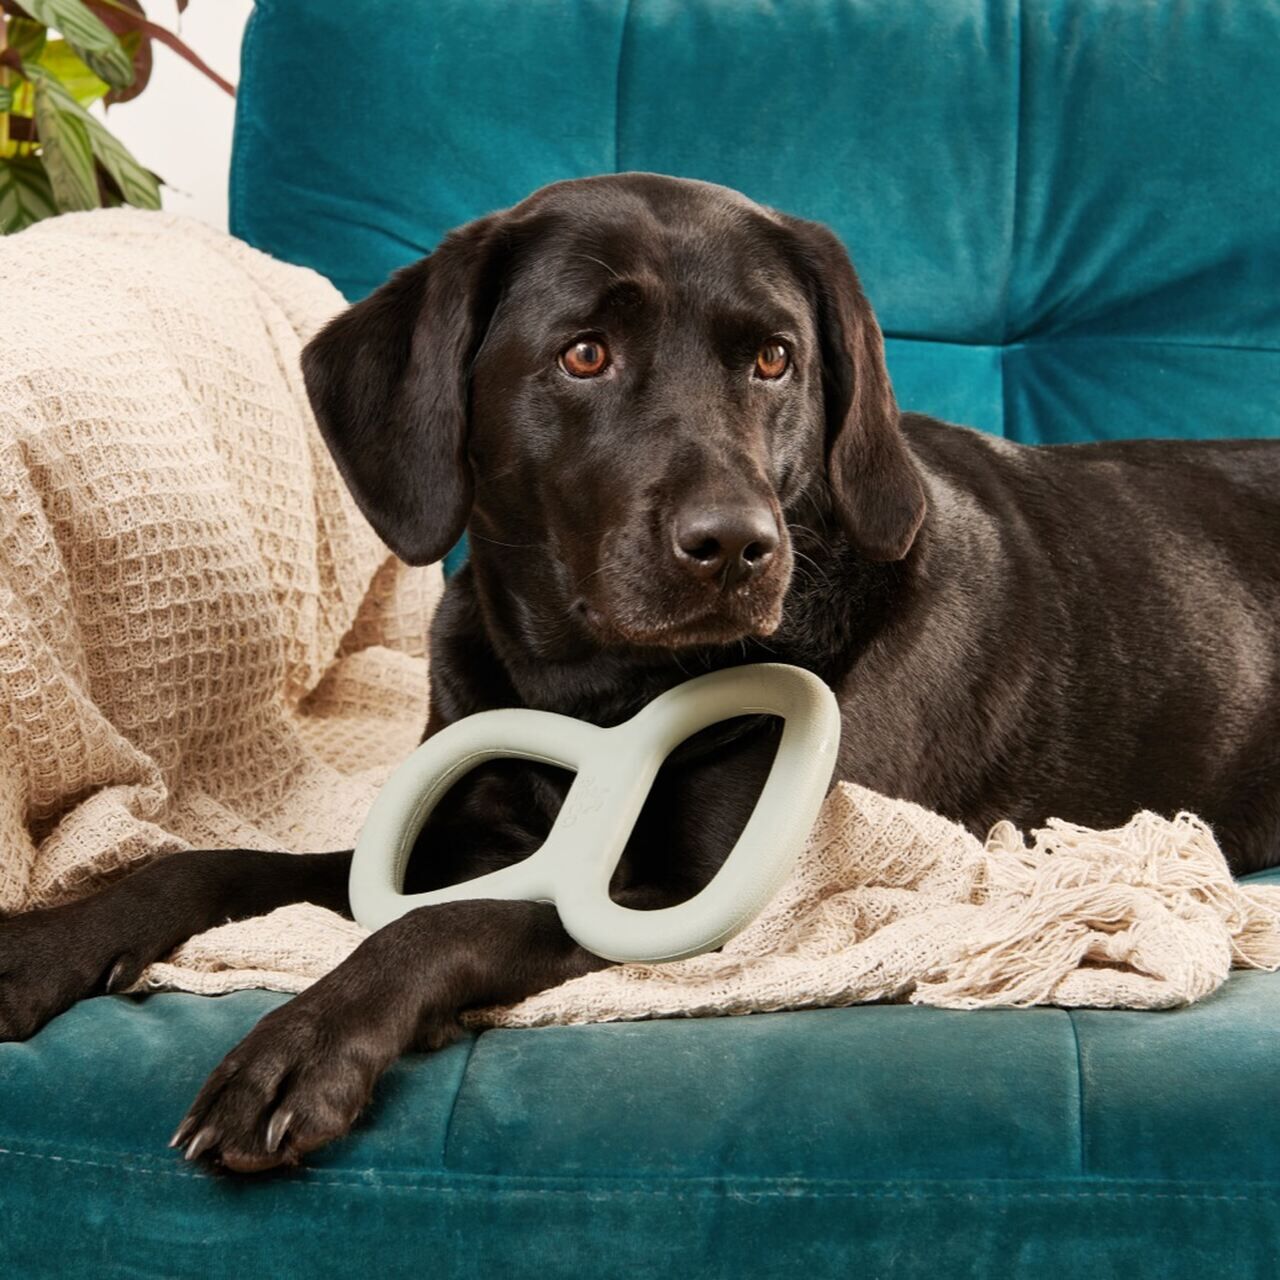 Beco-Tough-Tugger-Zerrspielzeug-schwarzer-Labrador-liegt auf-petrol-farbener-Couch-mit-gruenem-Hundespielzeug-BT-75636